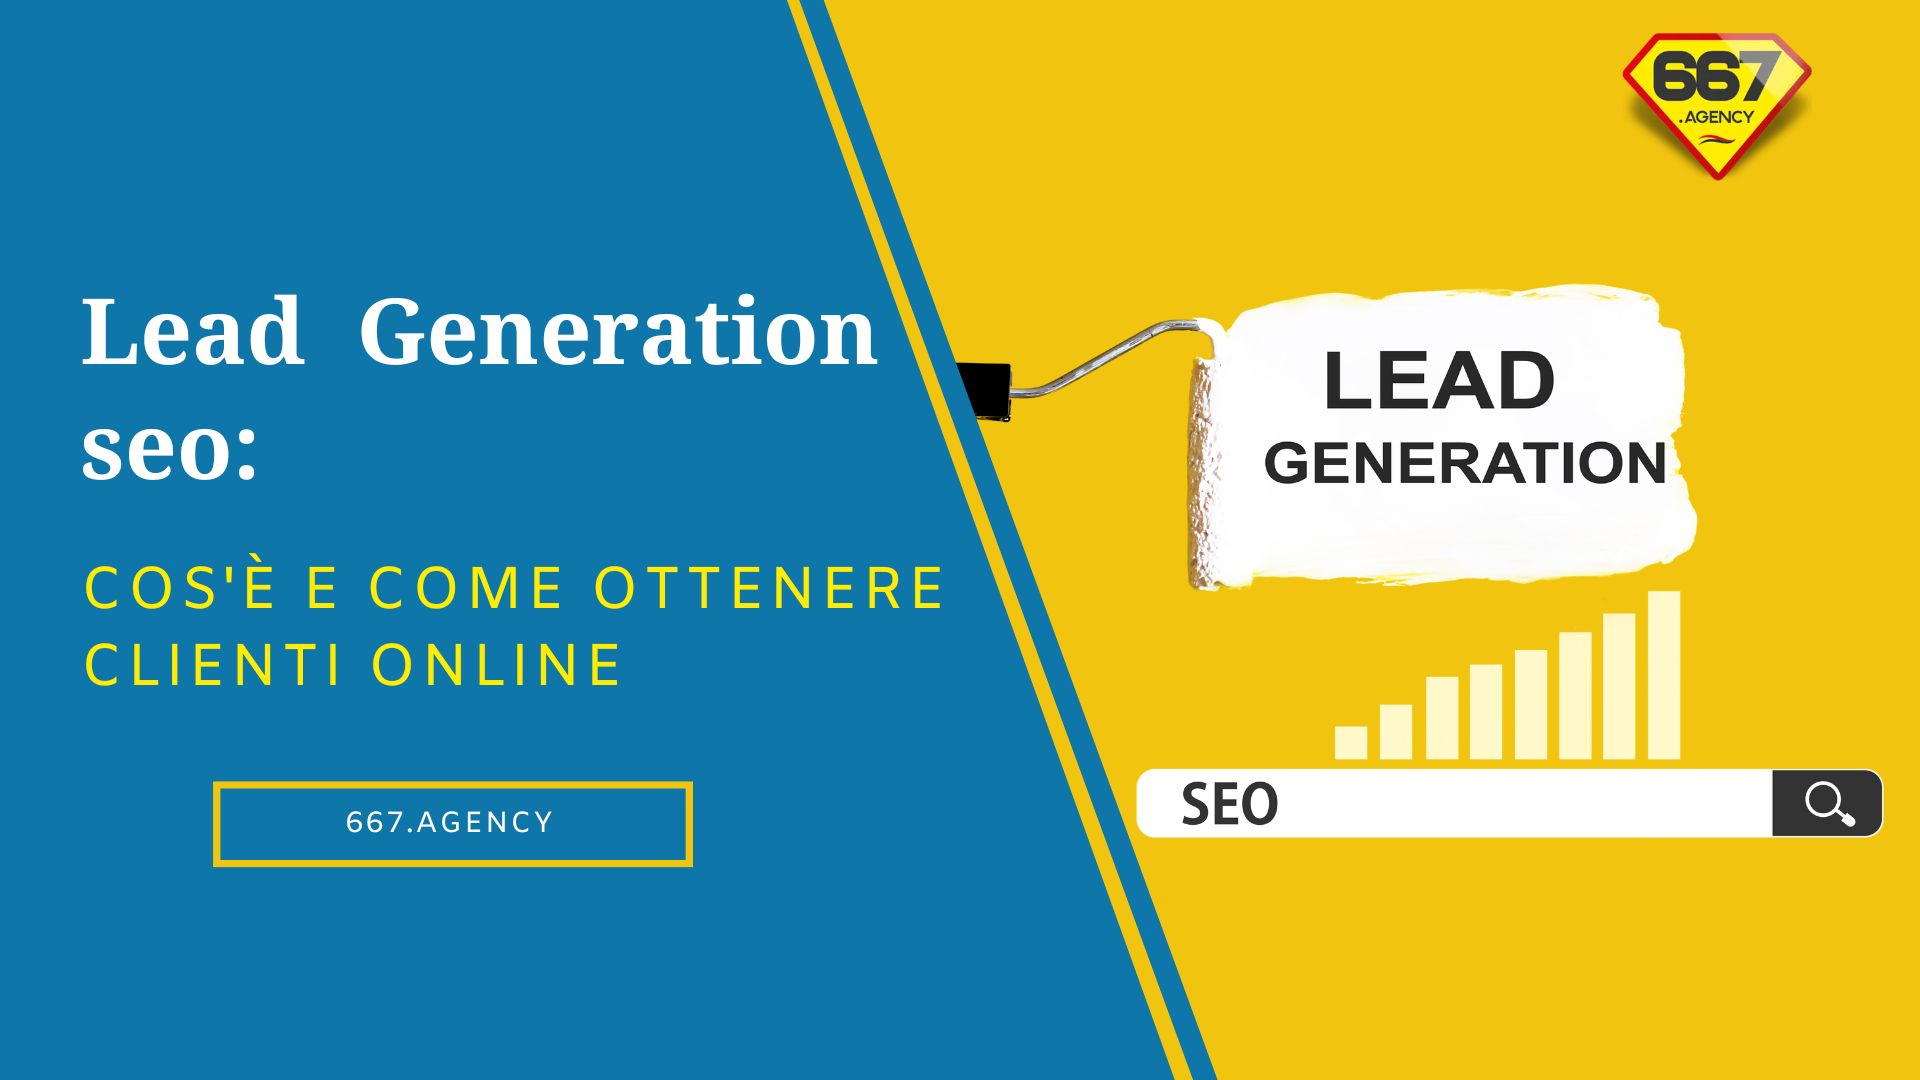 Lead generation seo: cos’è e come ottenere clienti online